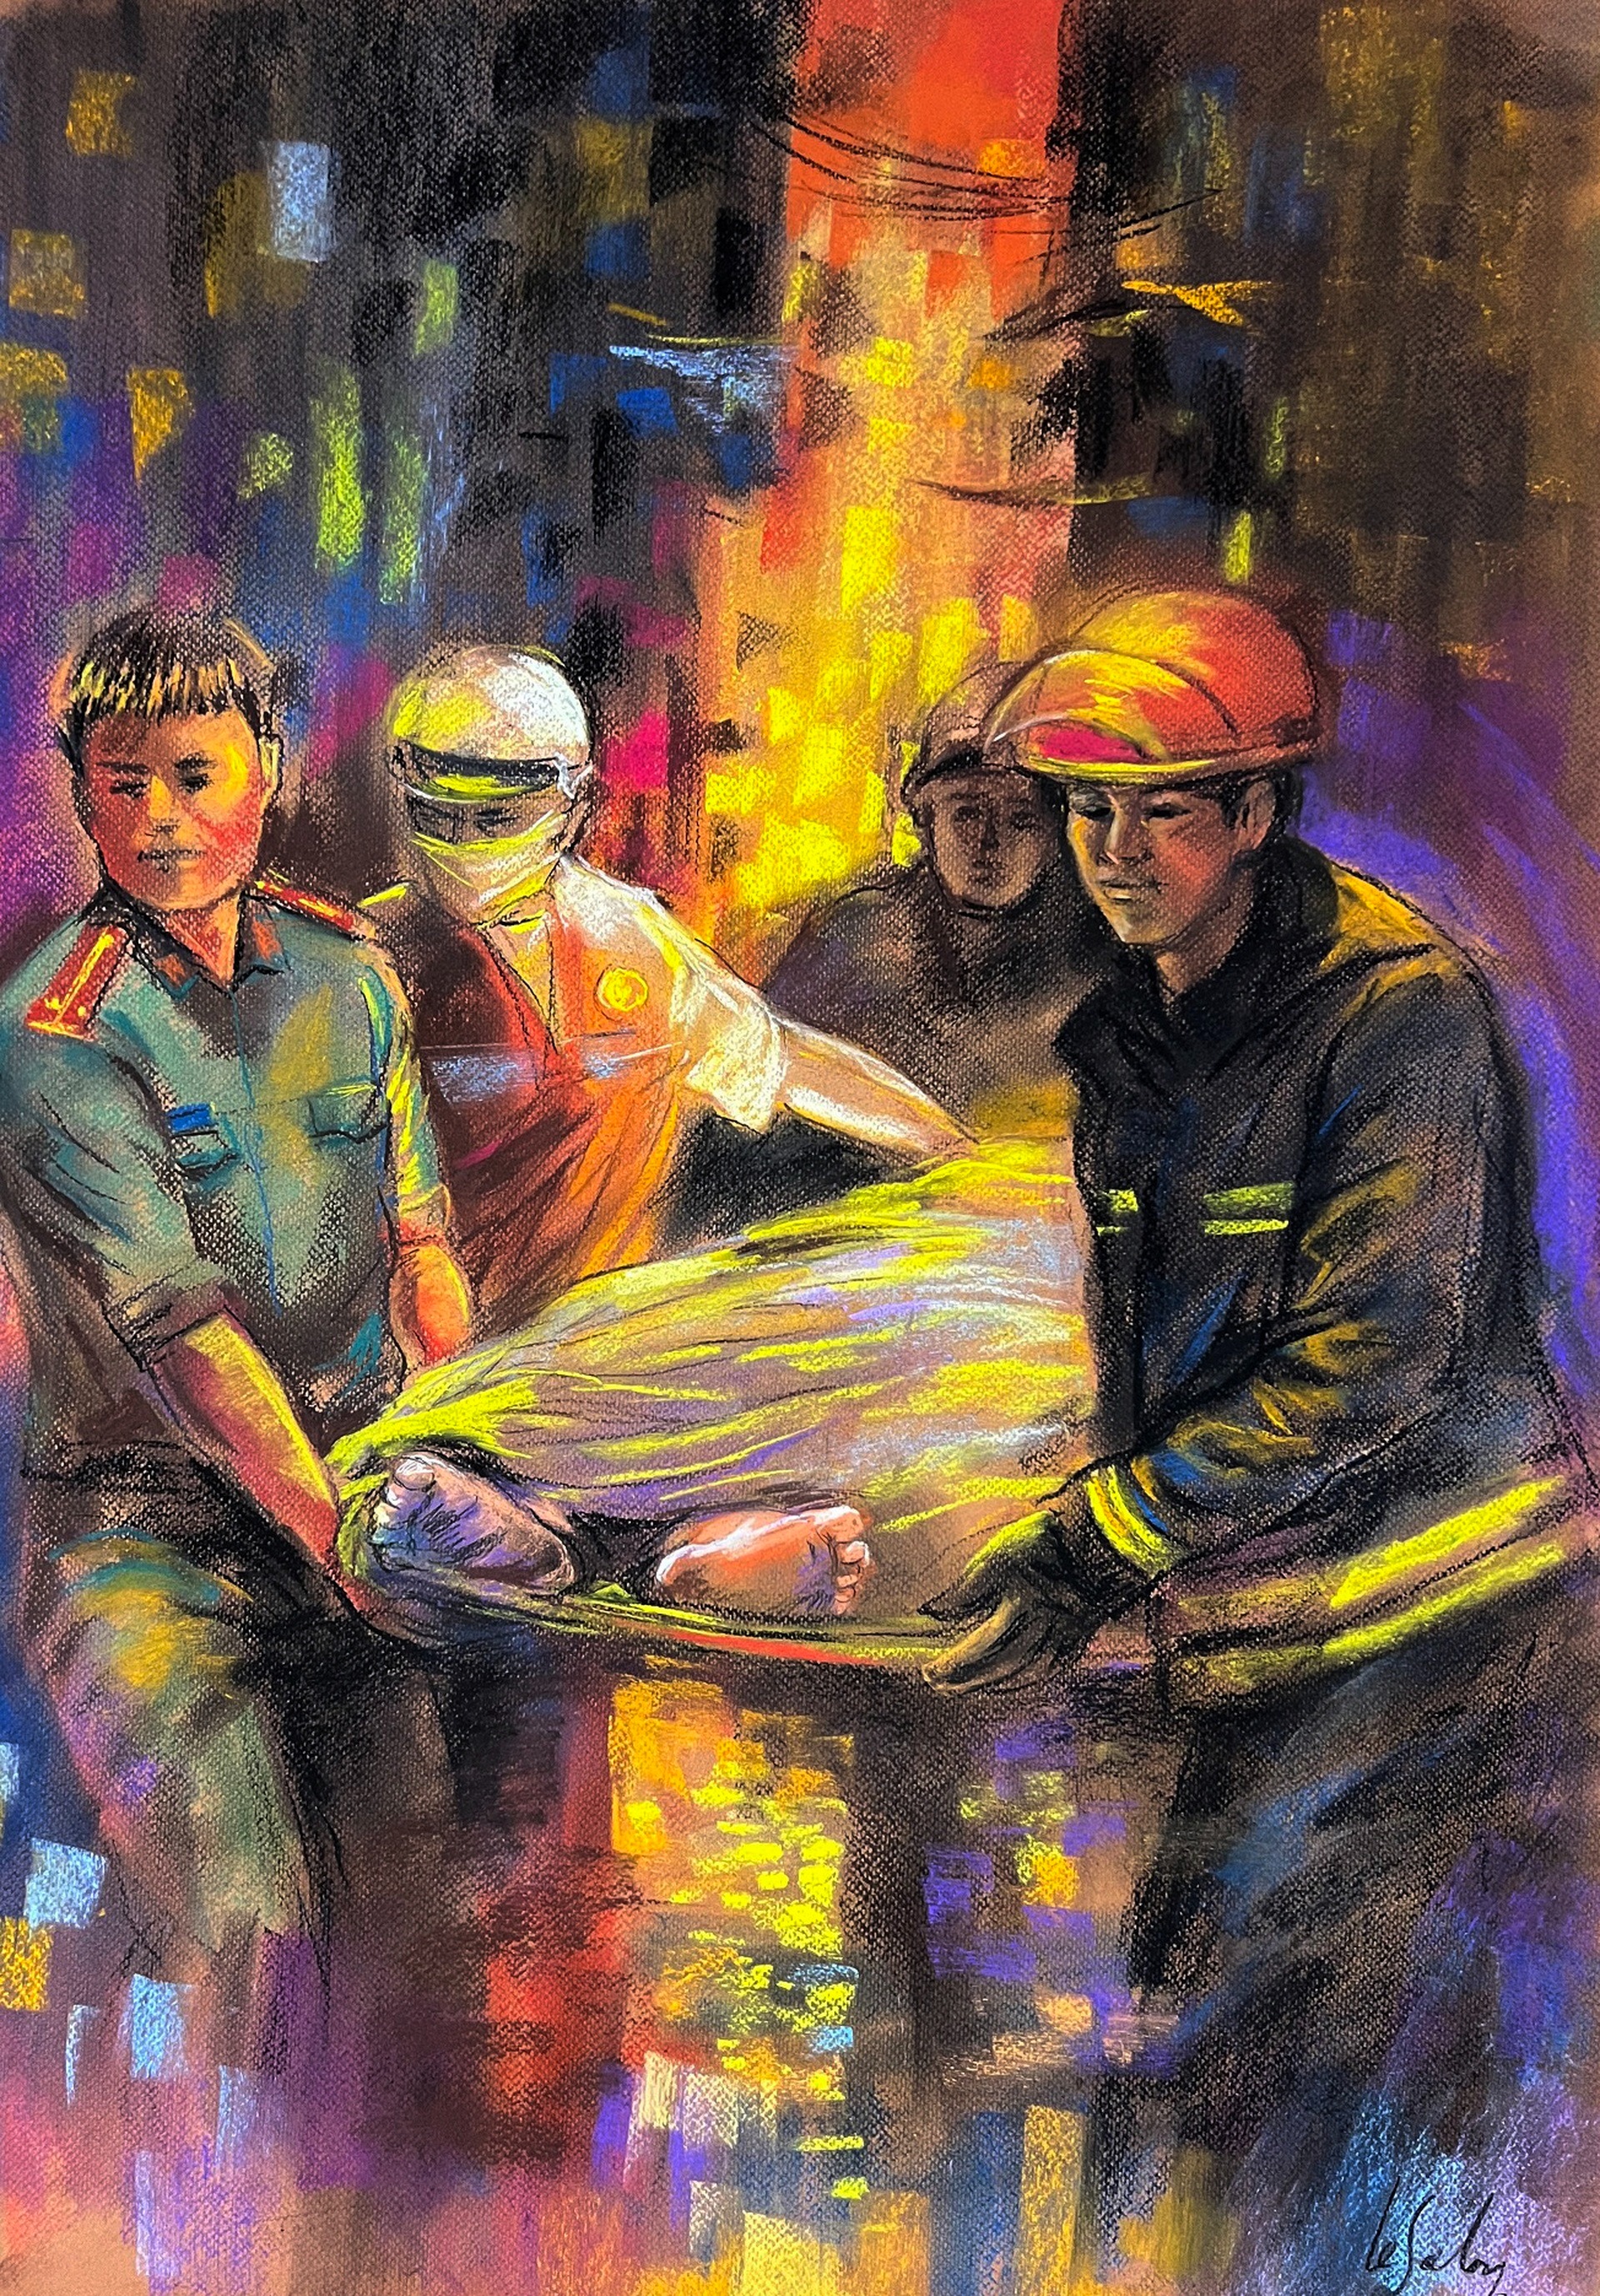 Bộ tranh khắc họa đêm chạy đua khói lửa cứu người trong vụ cháy chung cư mini ở Hà Nội - Ảnh 3.